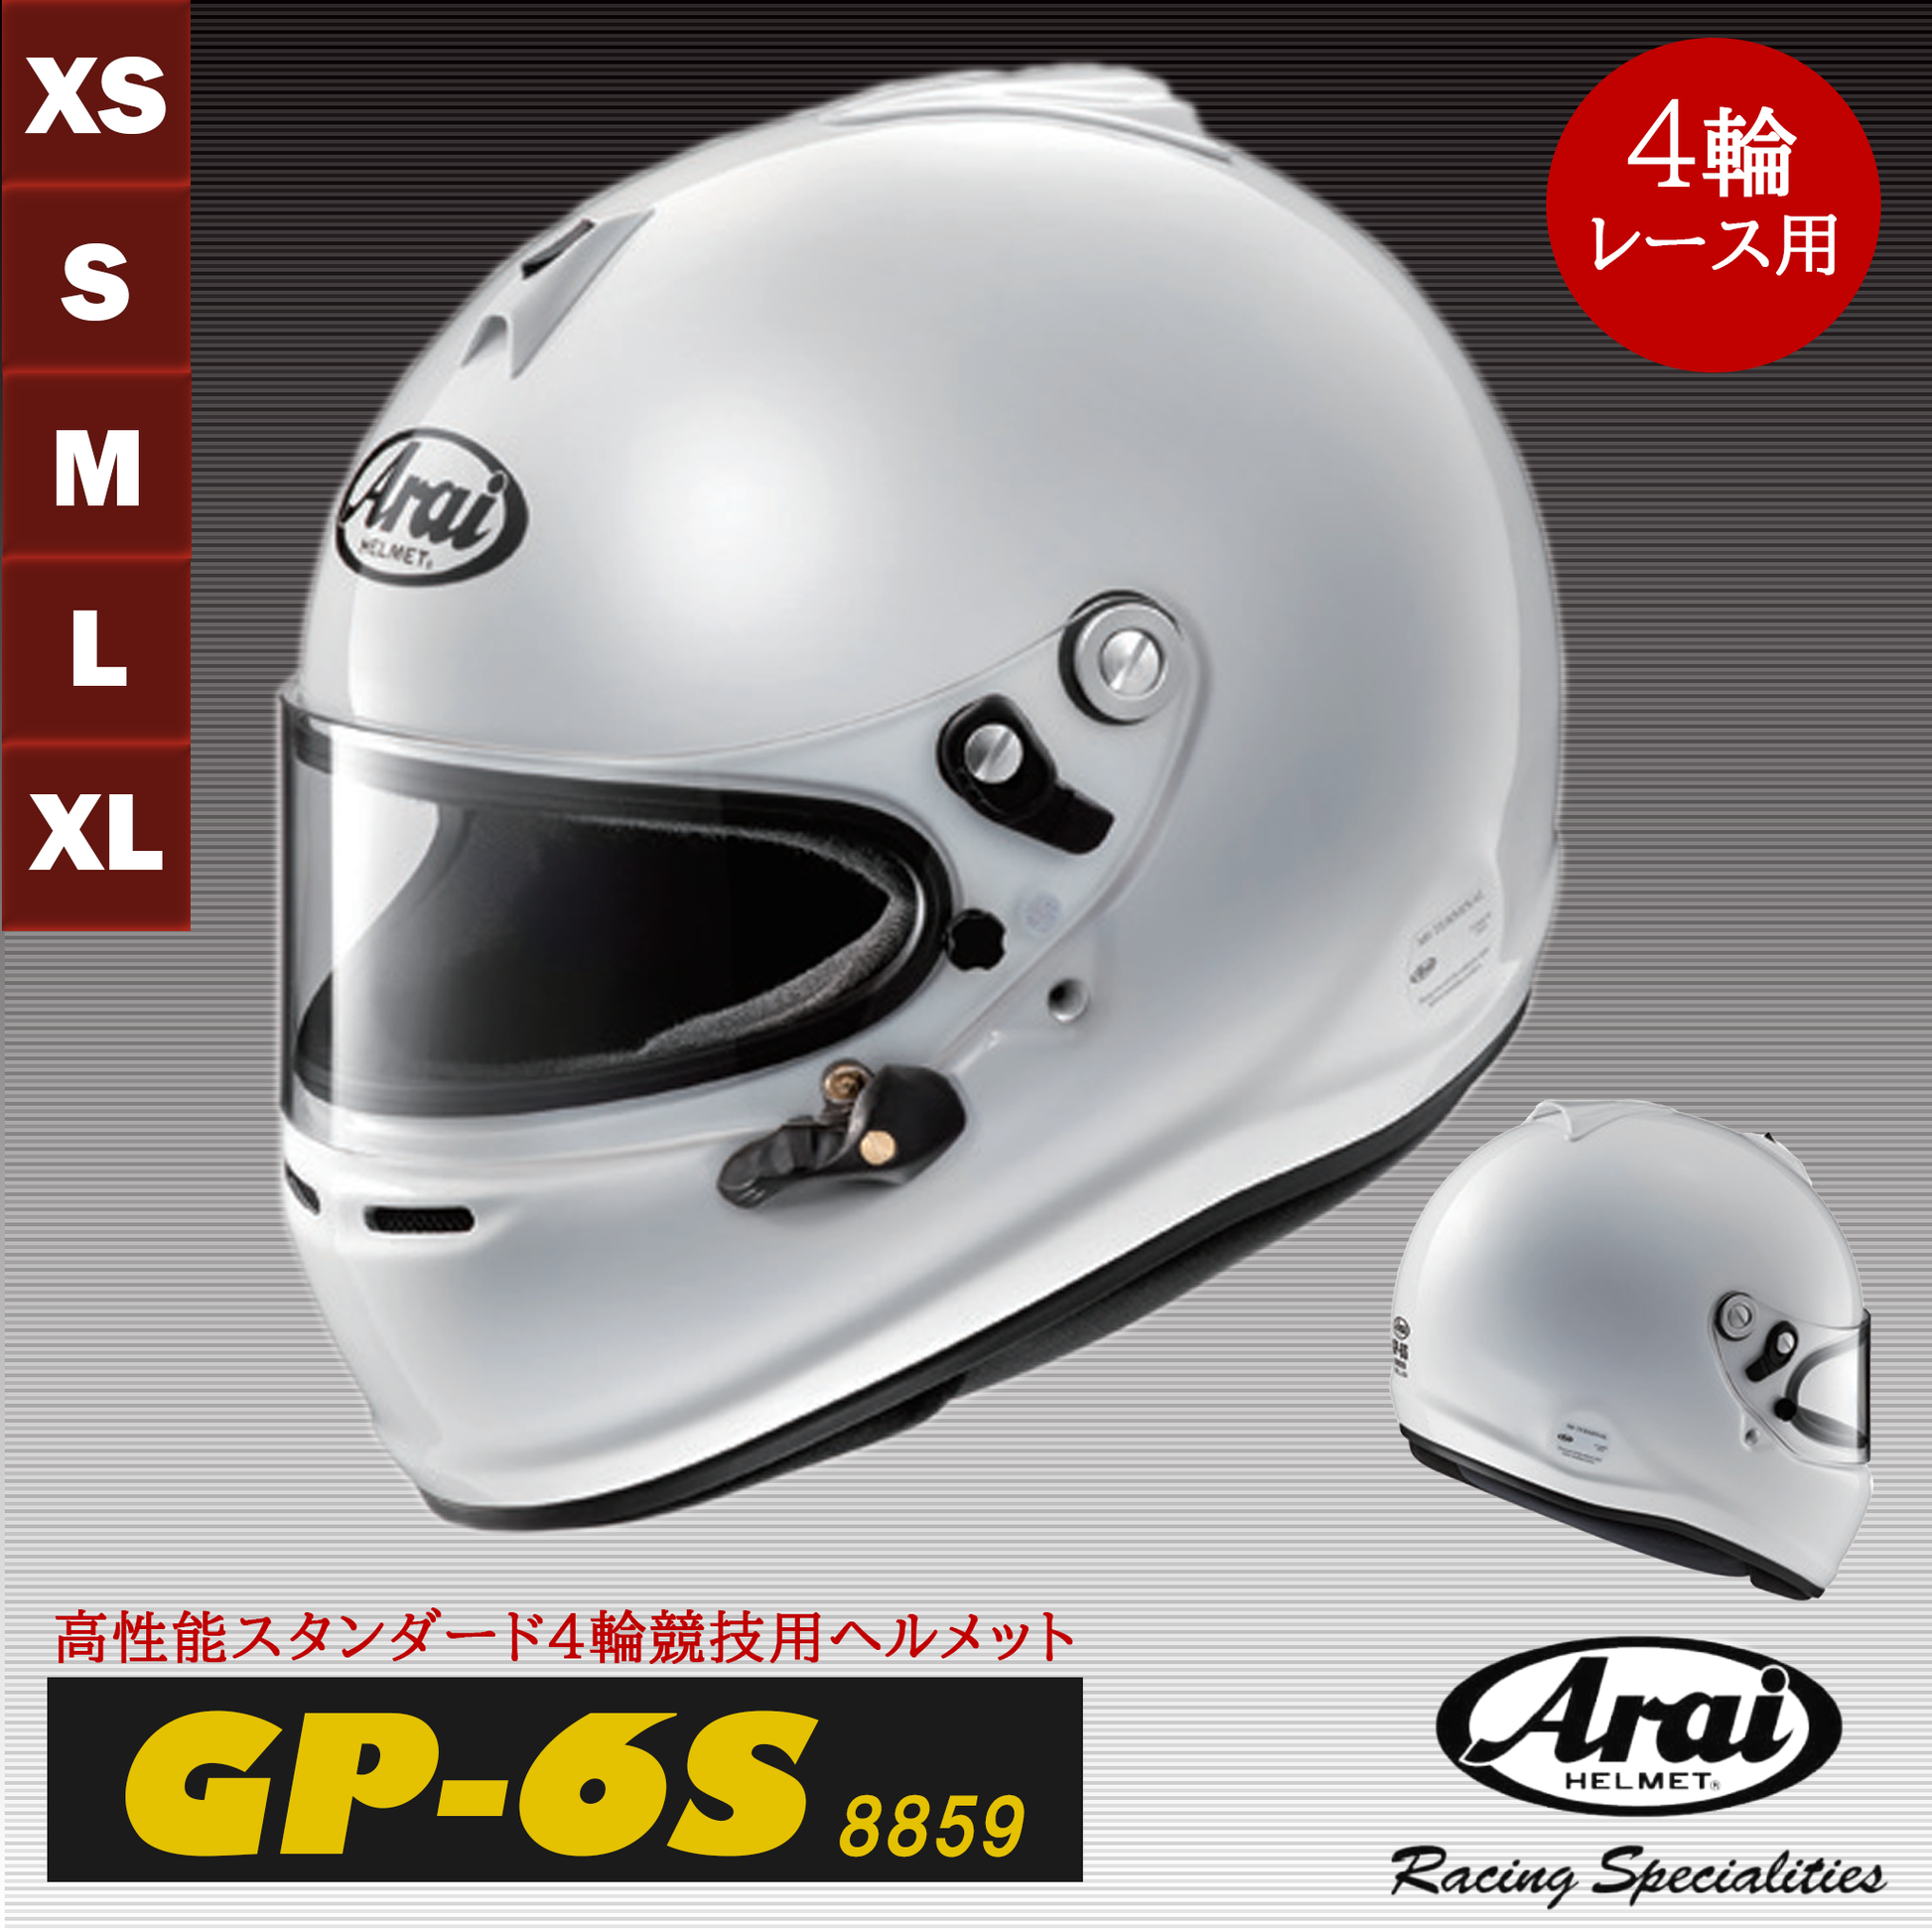 アライ ヘルメット GP-6 8859 60-61(XL)サイズホワイト白